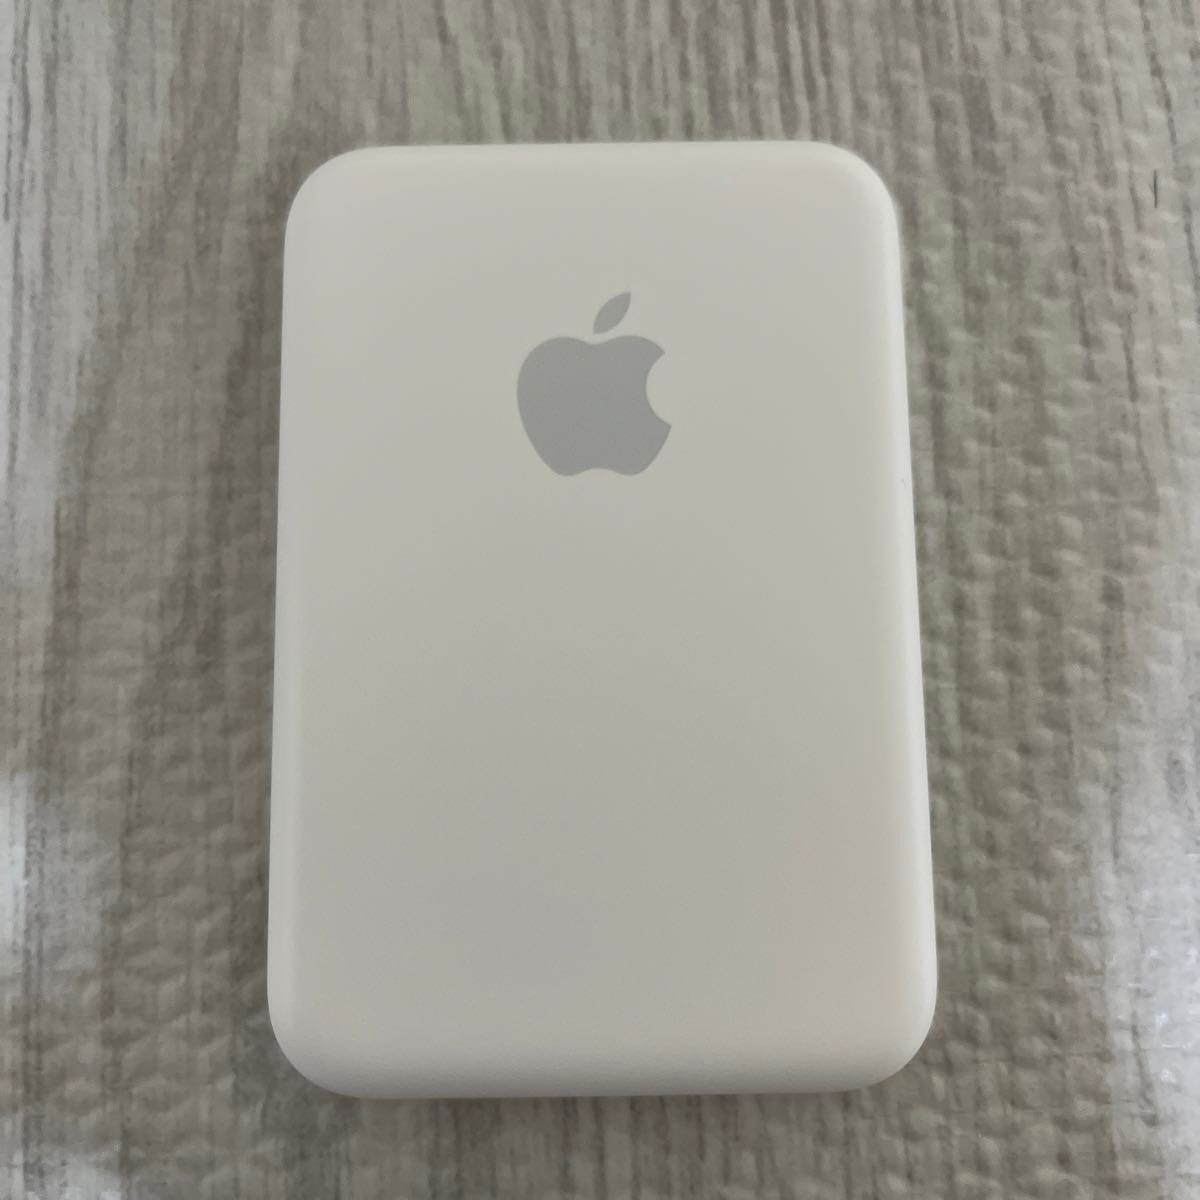 Apple 純正 MagSafeバッテリーパックとelago MagSafeバッテリーパック カバーのセット